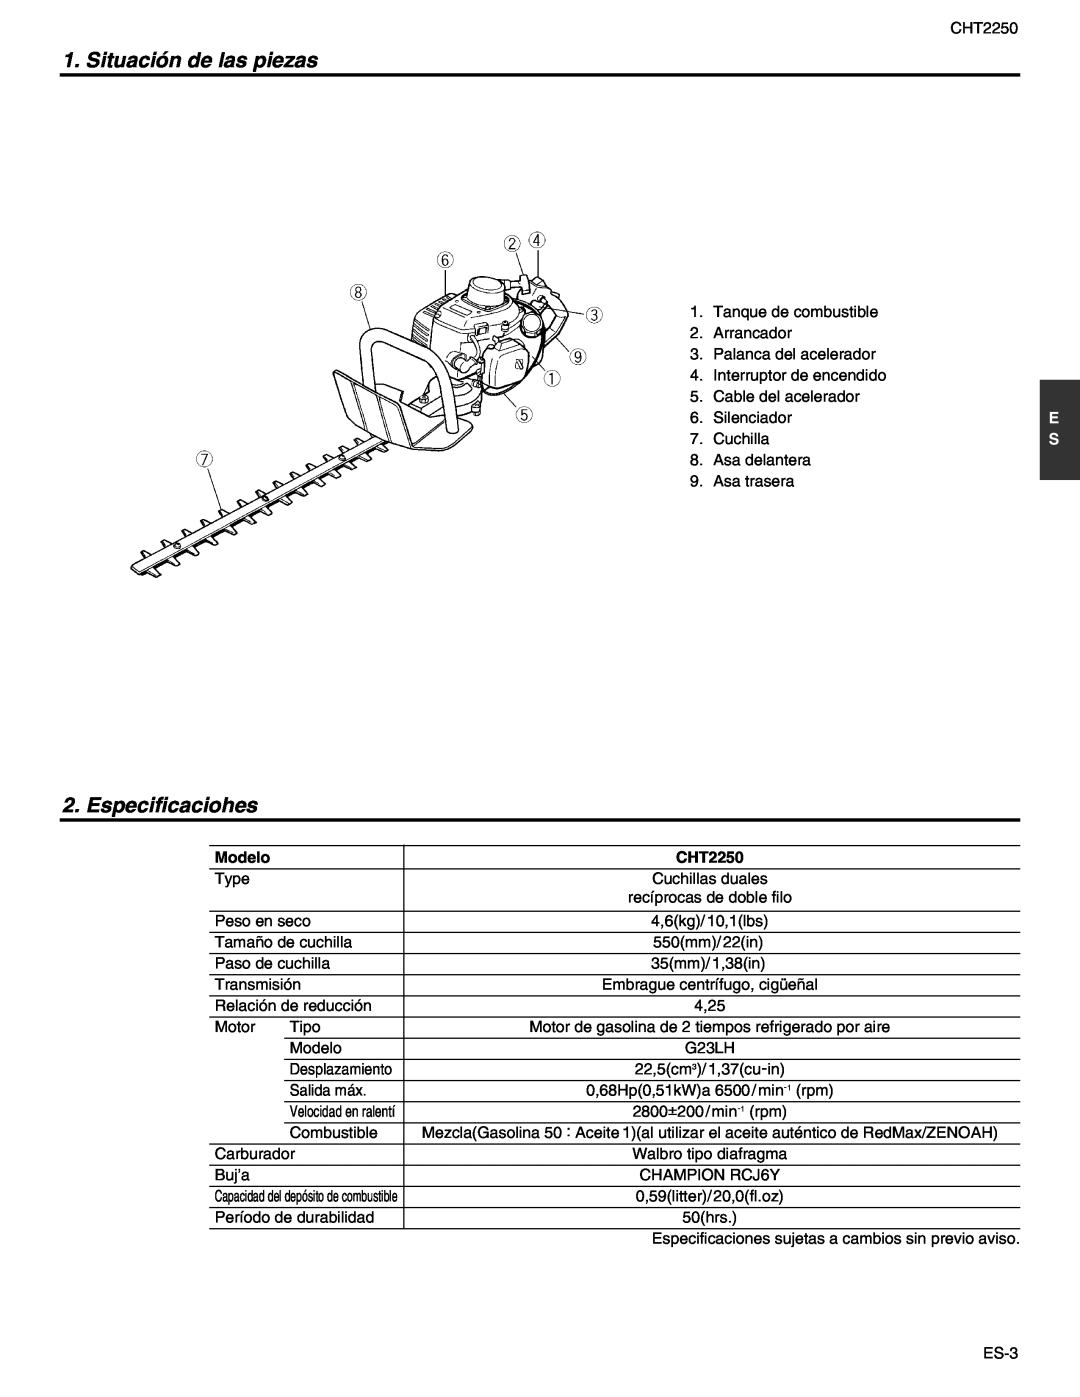 RedMax CHT2250 manual Situación de las piezas, Especificaciohes, Velocidad en ralentí 